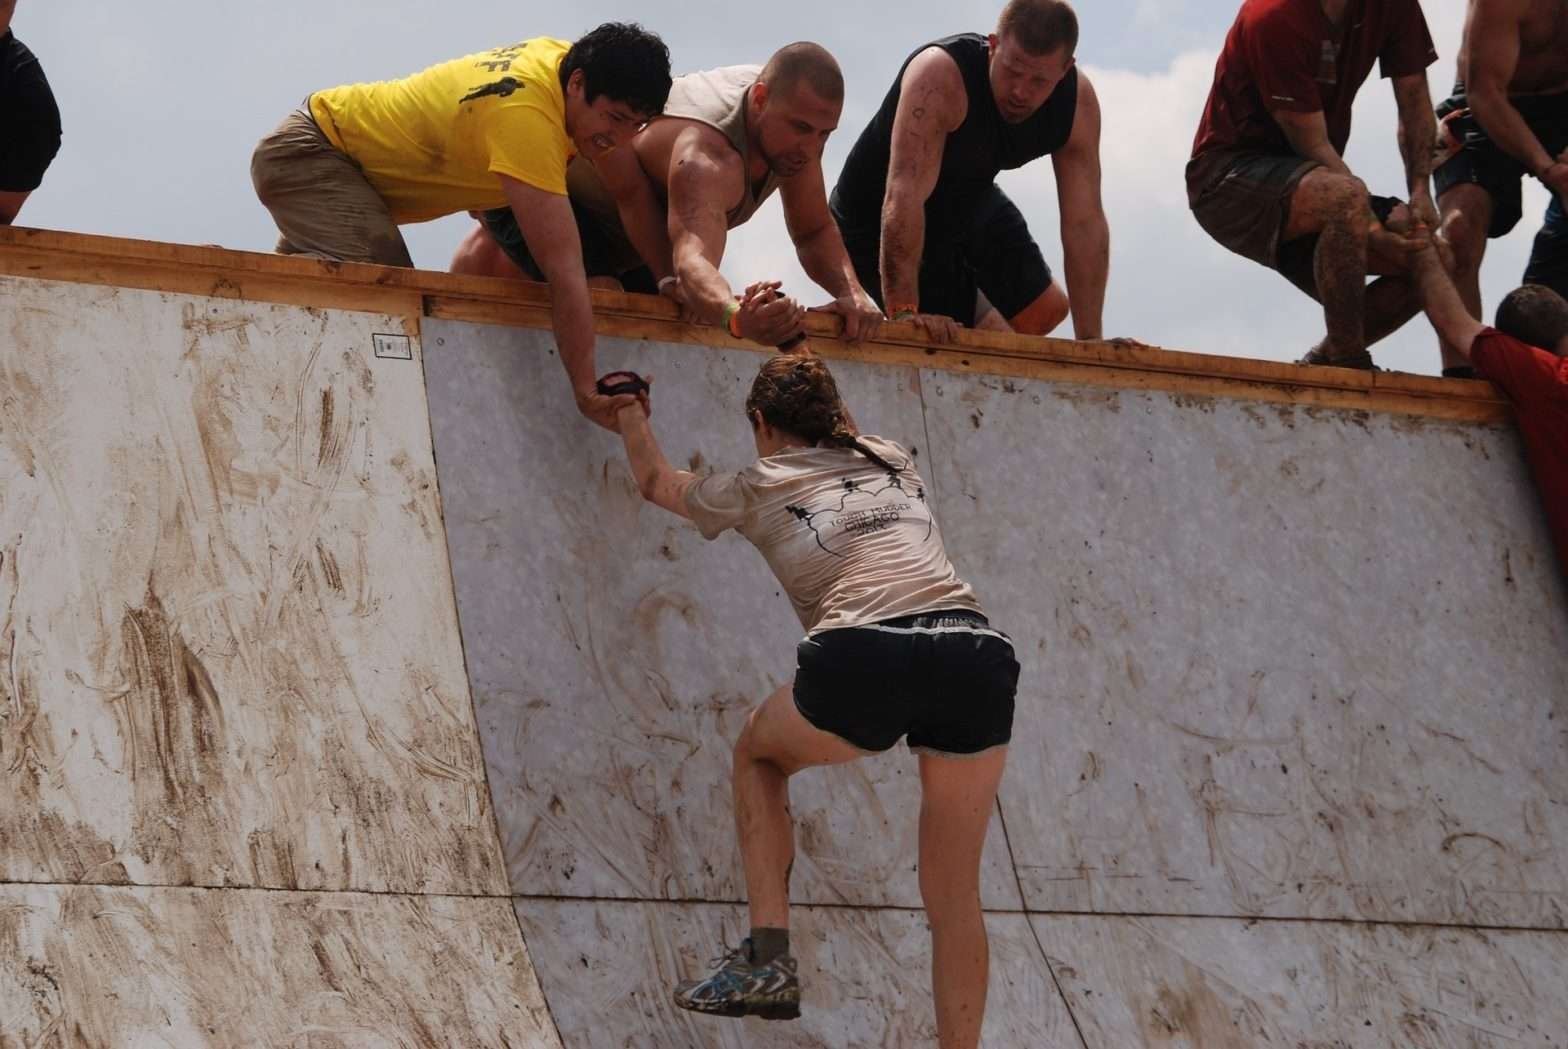 Homens no alto de um obstáculo ajudando uma mulher a subir